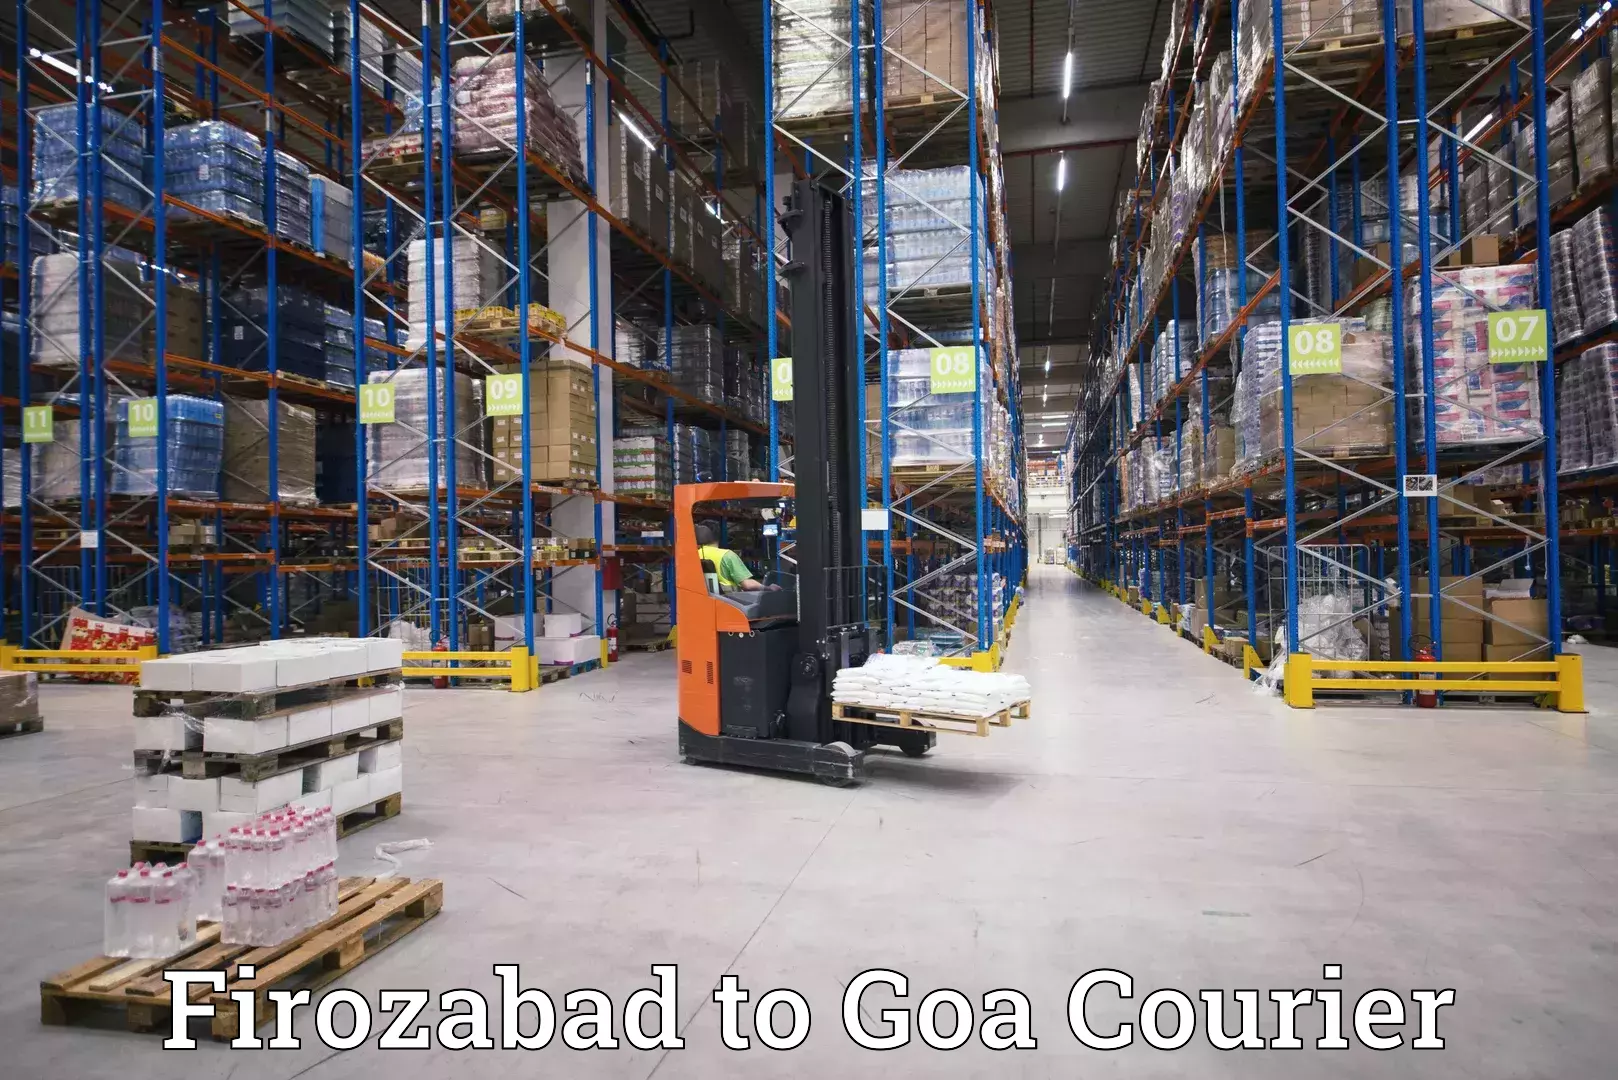 Customer-centric shipping Firozabad to Margao